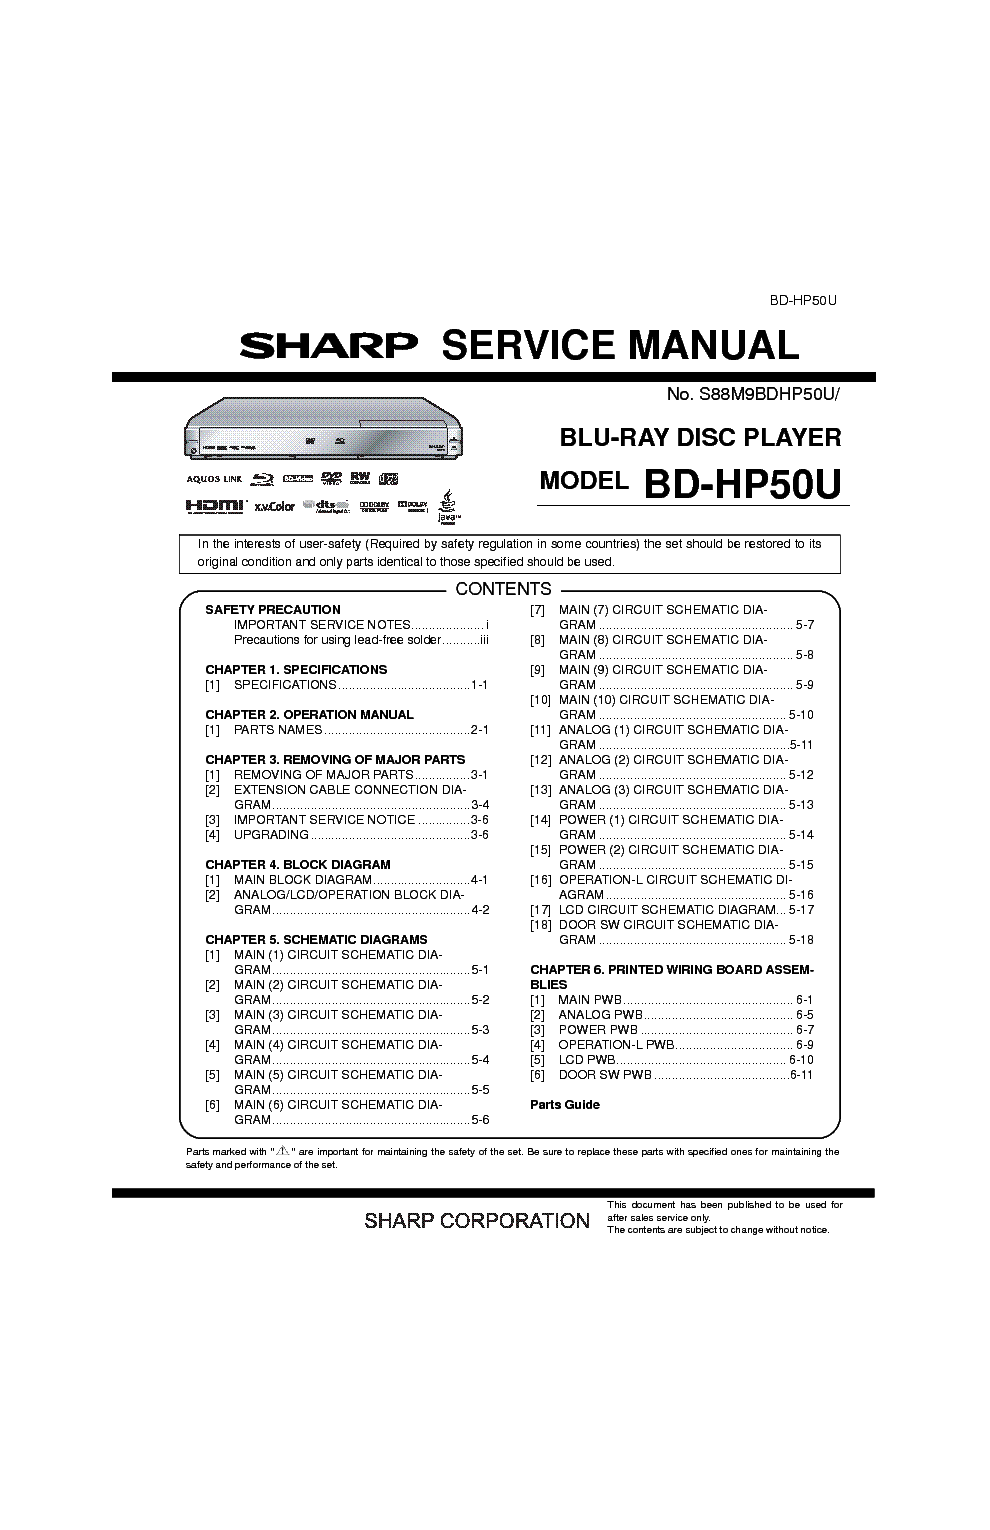 E66 Service Manual Download